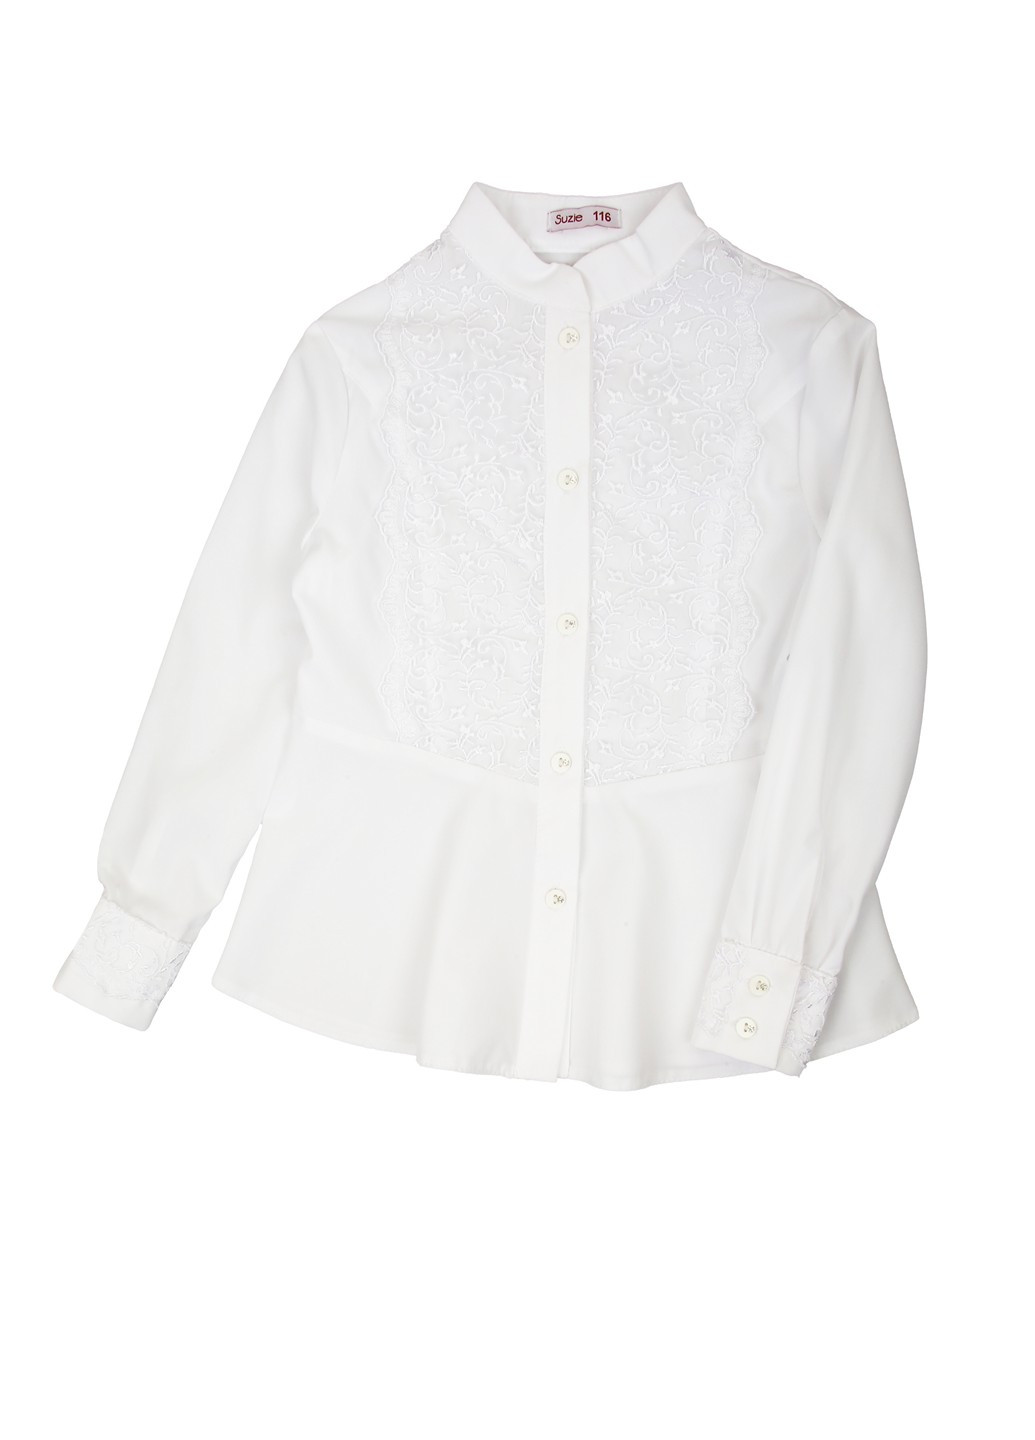 Белая однотонная блузка Suzie демисезонная